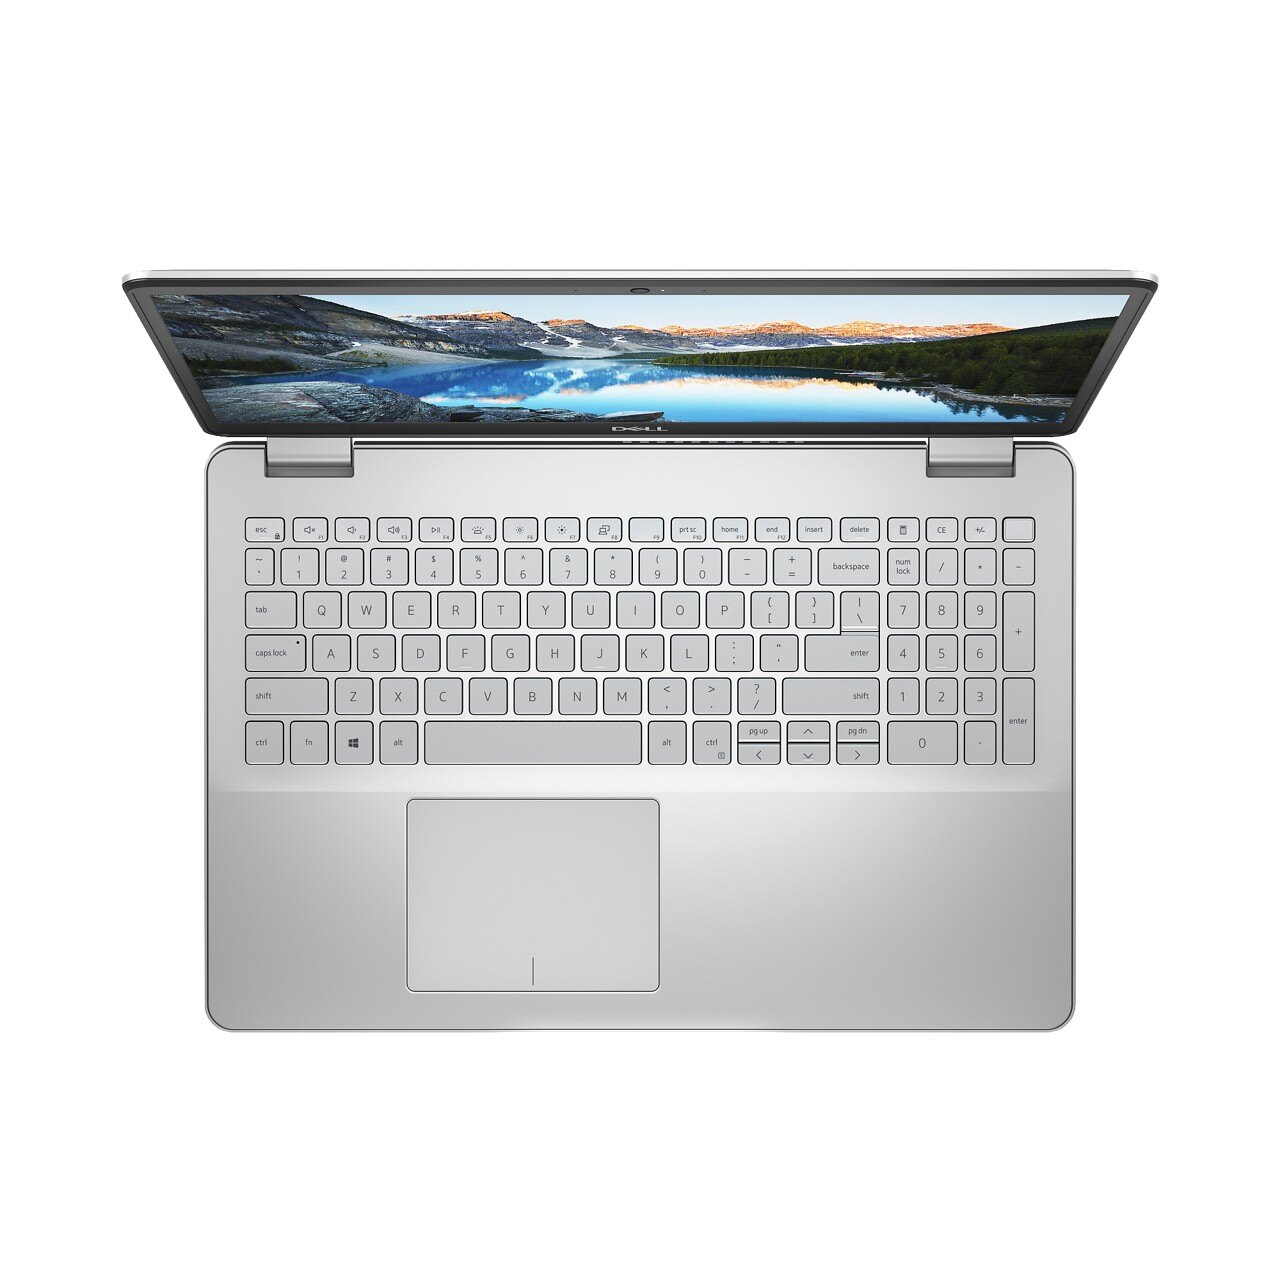 Laptop Dell Inspiron 5584 70186849 I3 - 8145U 4GB 1TB 15.6FHD W10 Silver - Hàng Chính Hãng